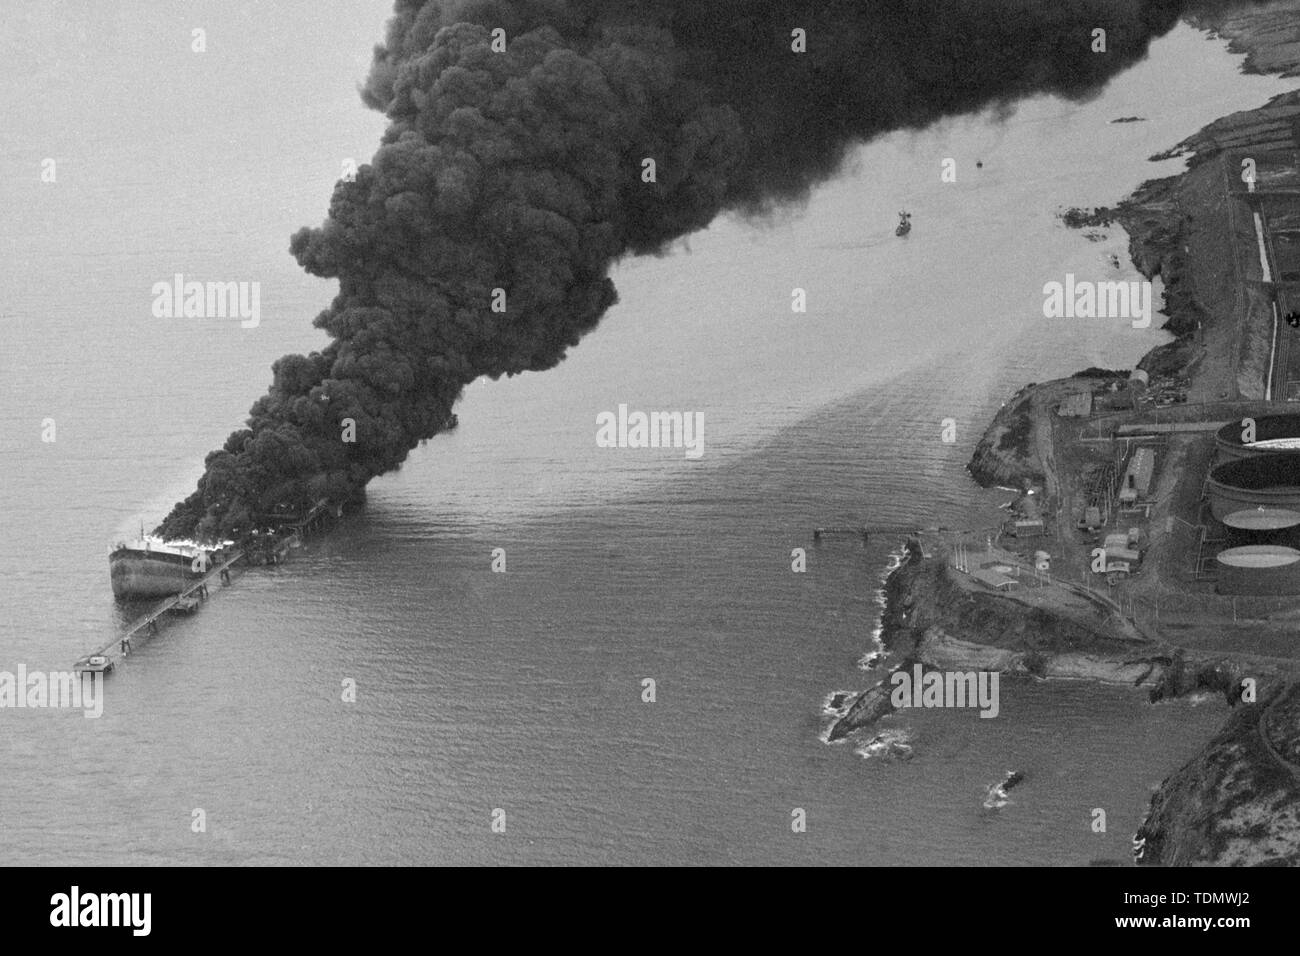 Verse de fumée en partie submergé l'épave du pétrolier français Bételgeuse, qui a été déchiré, le lundi 8 janvier, par une série d'explosions comme elle était le déchargement 120 000 tonnes de pétrole brut au terminal pétrolier du Golfe dans la baie de Bantry, Irlande. Cinquante personnes sont mortes, dont 43 de l'équipage de la 60 000 tonnes camion-citerne. Banque D'Images